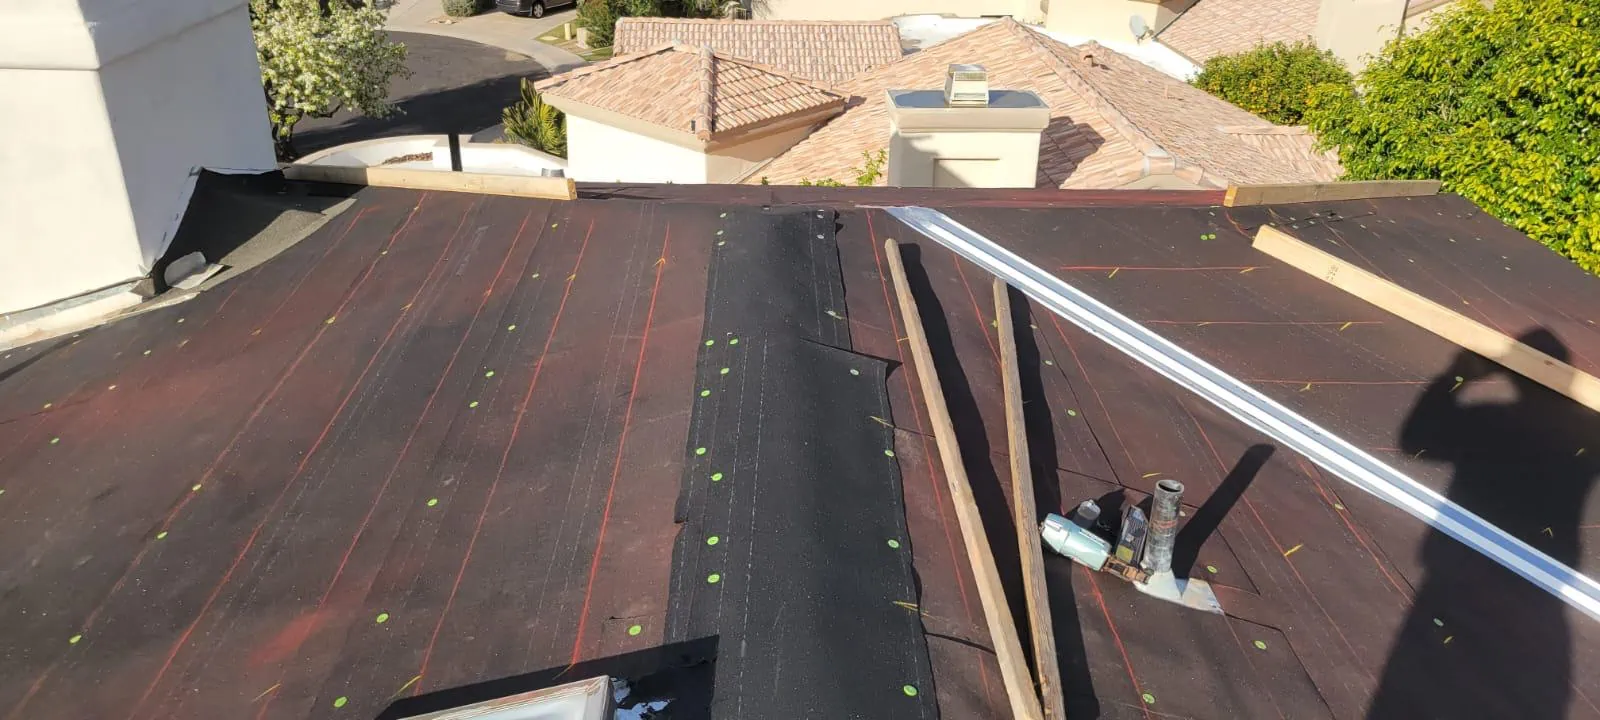 cost to repair tile roof underlayment in phoenix